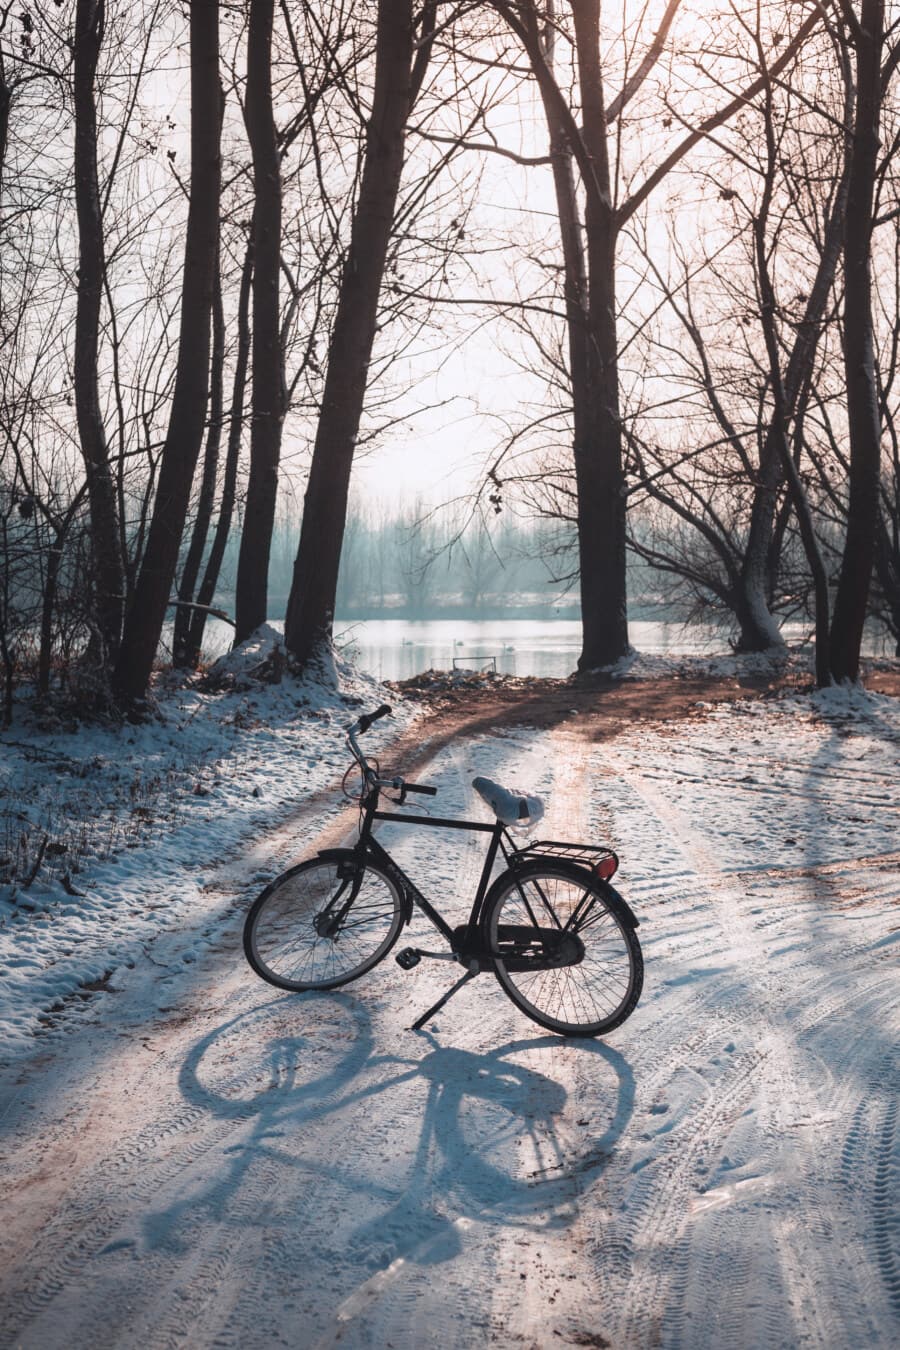 Лесная дорога, зима, дорога, велосипедов, снег, Лесная троинка, тень, с подсветкой, дерево, транспортное средство